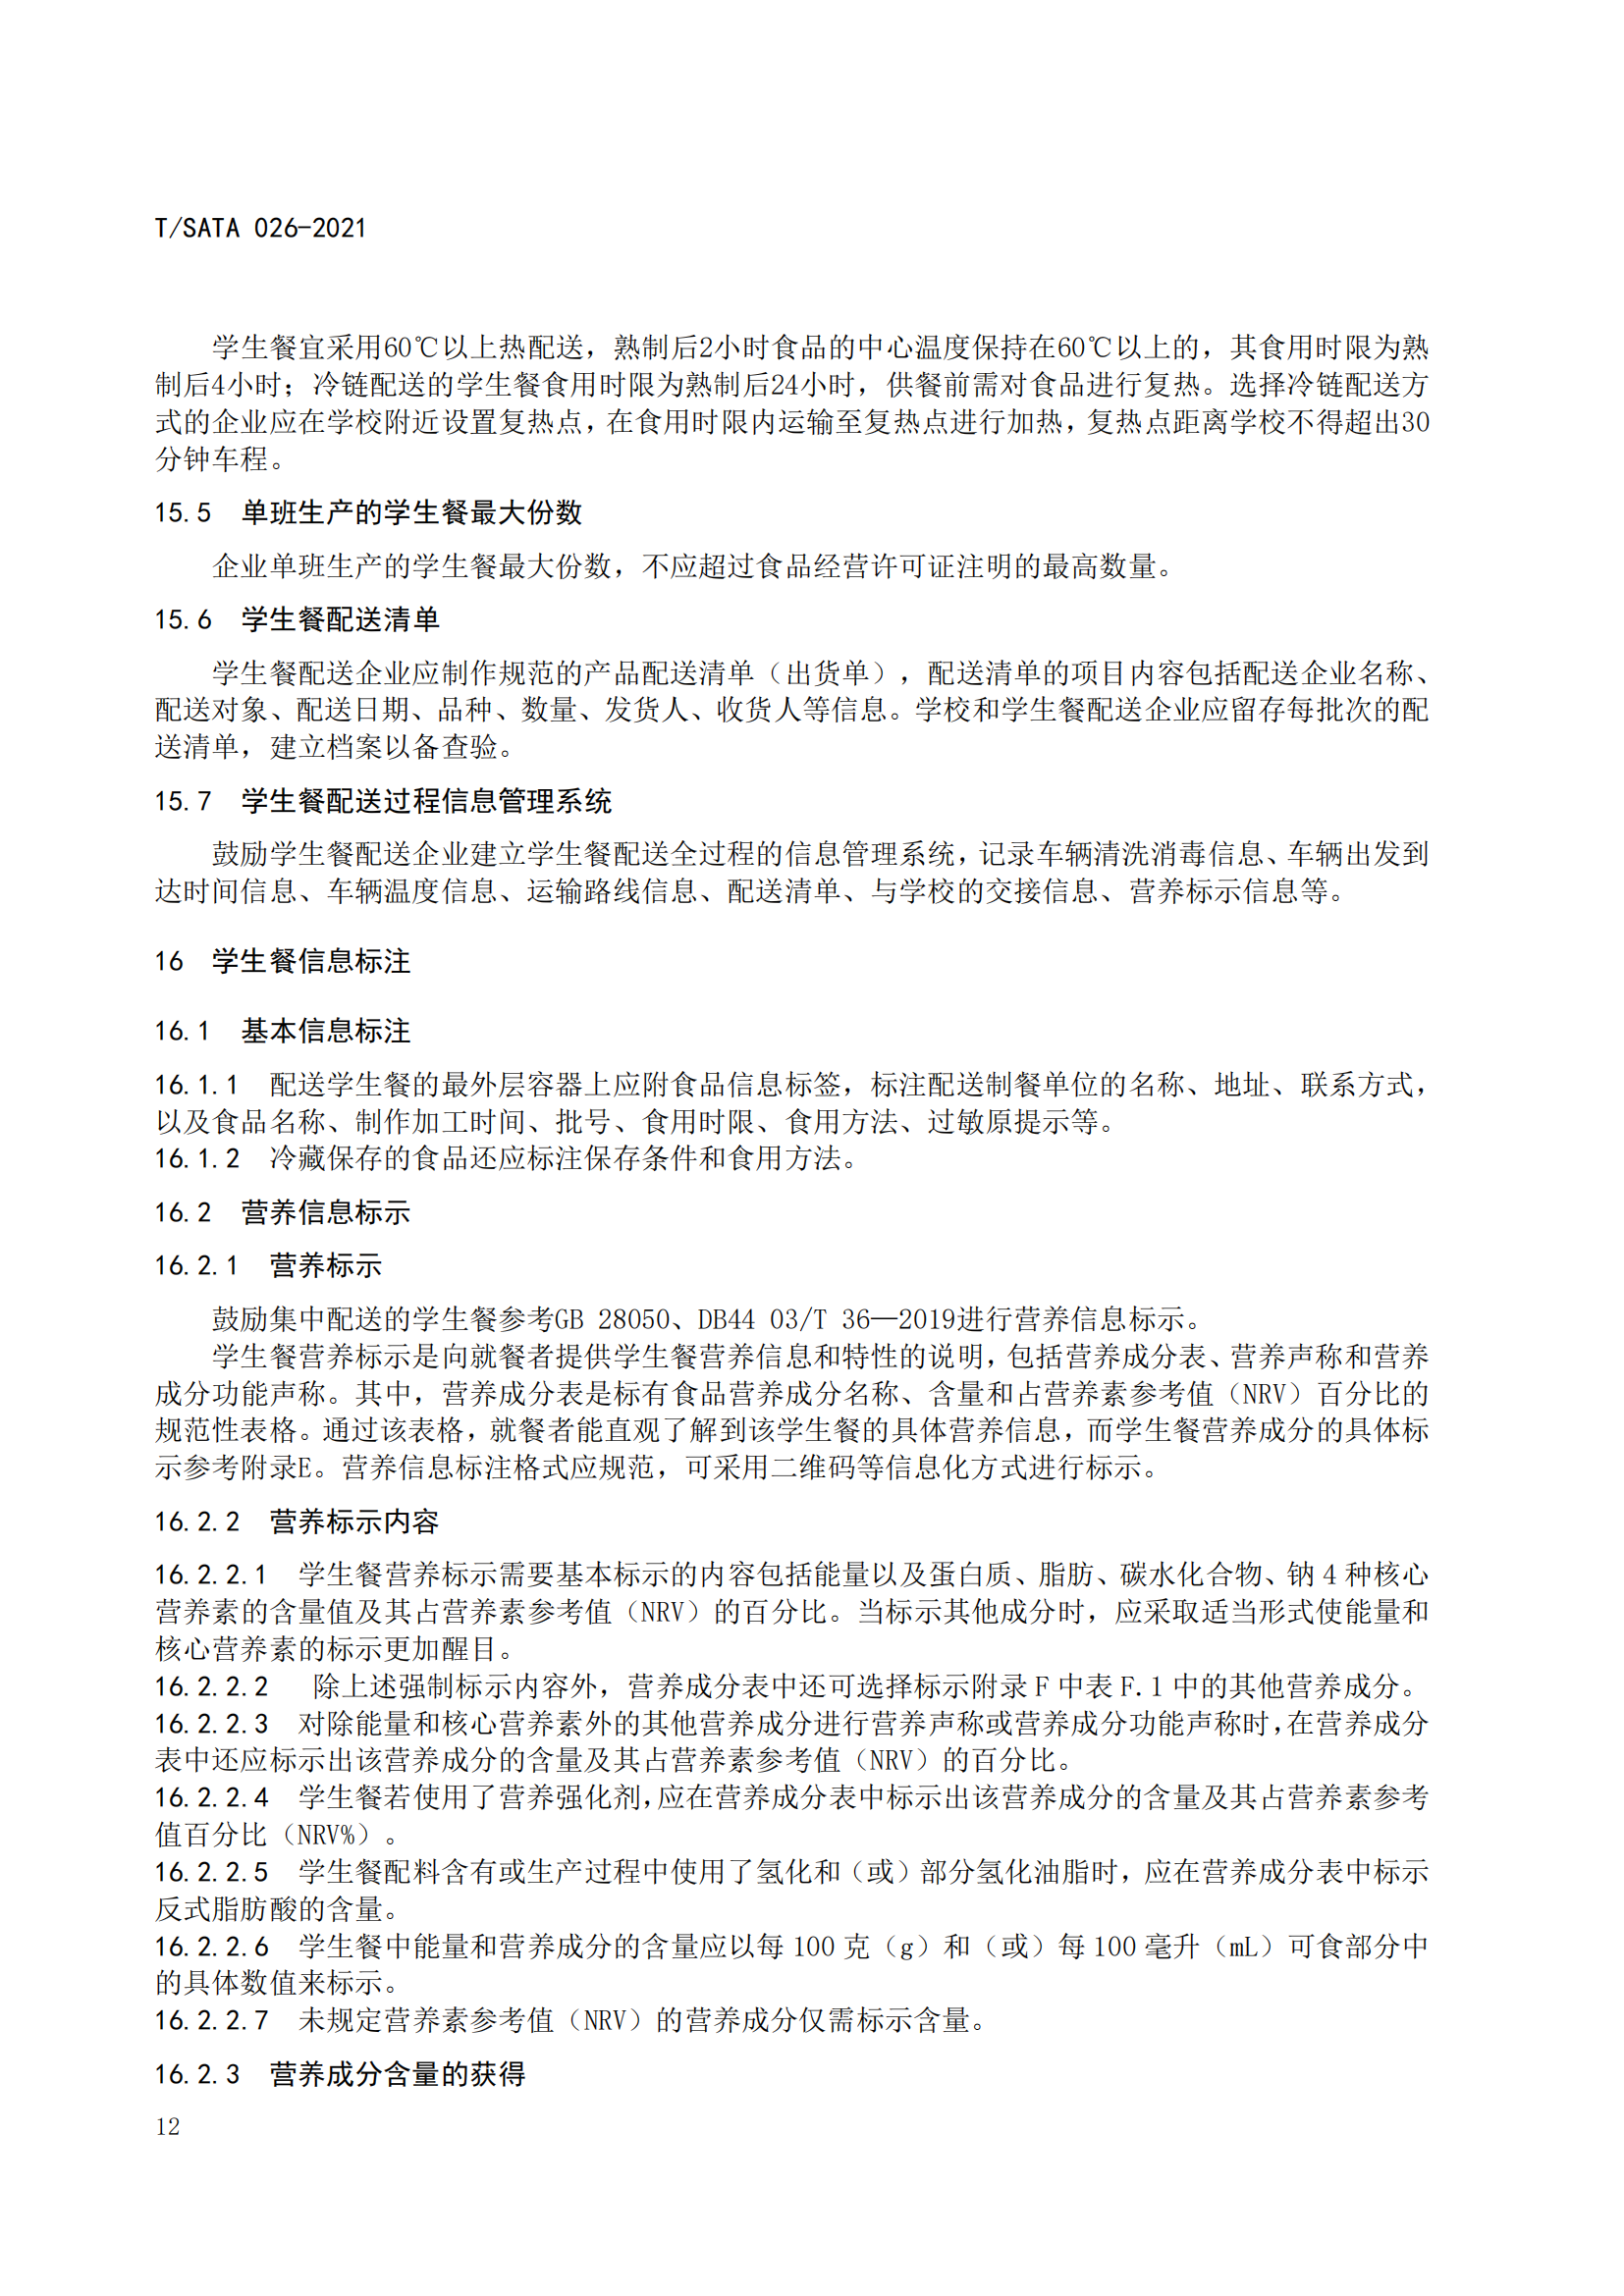 《深圳市校外集中配送学生餐操作规范》团体标准（发布版）2021.11.18终_14.png